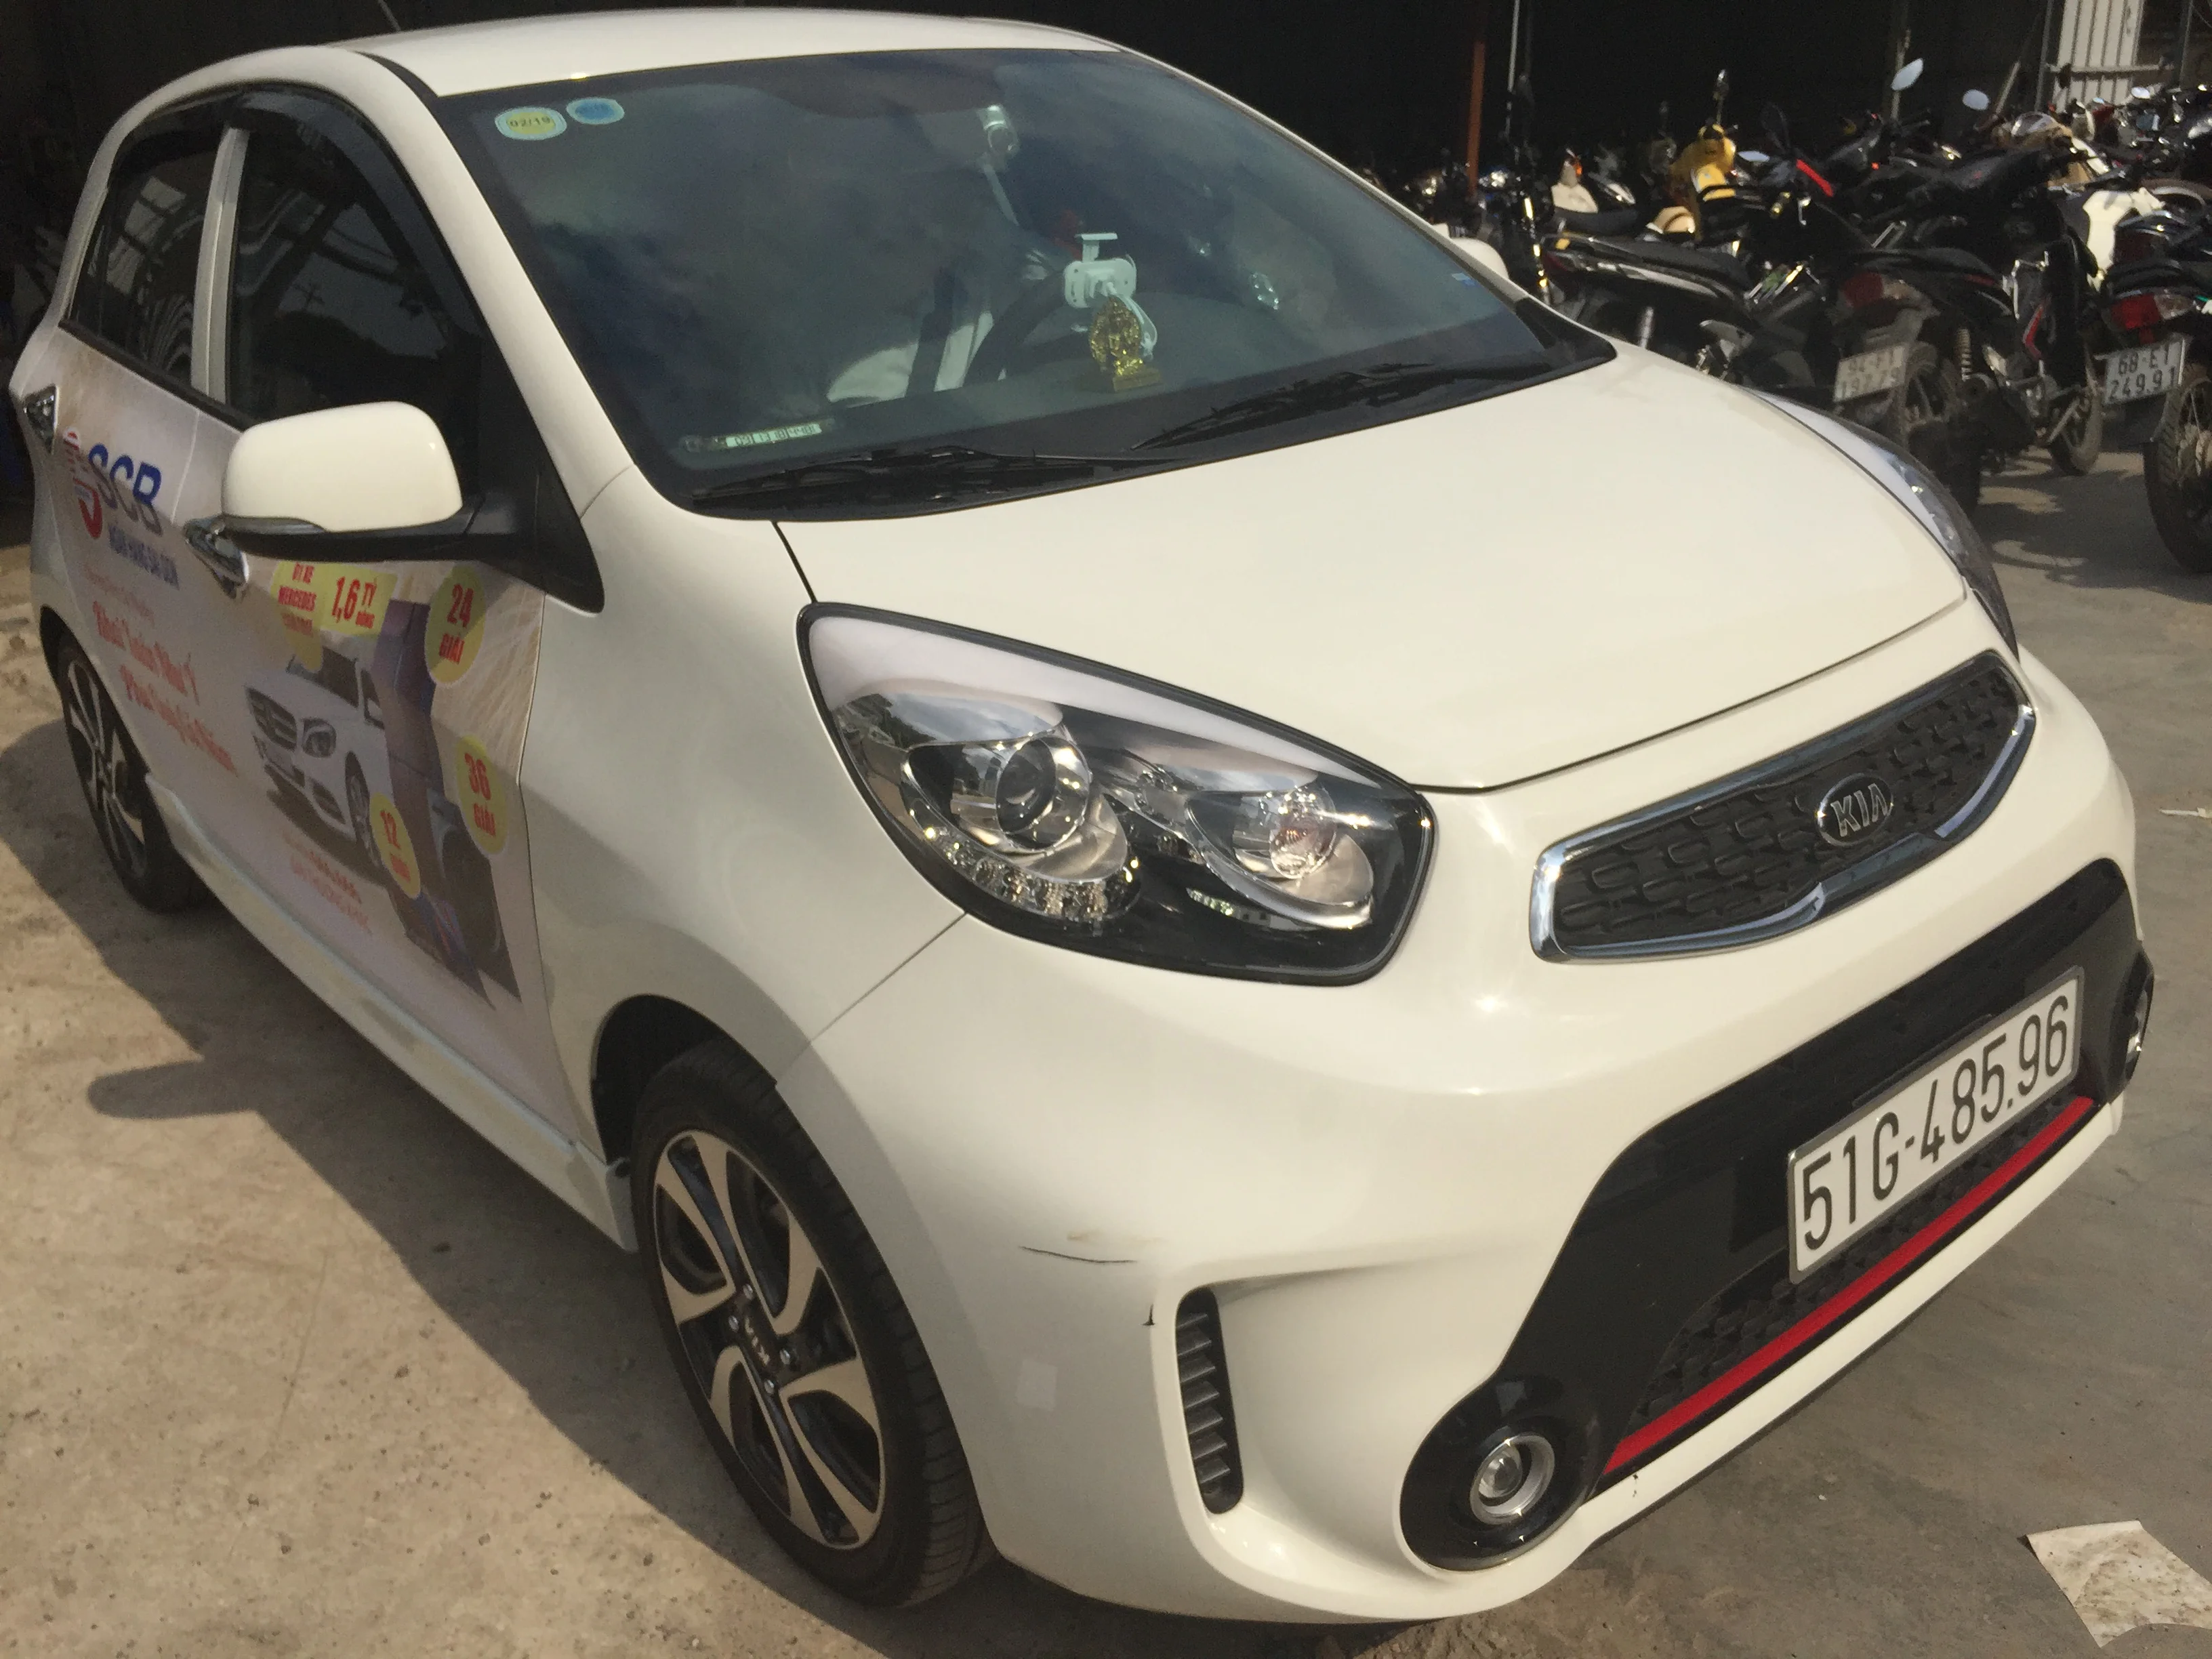 Dán quảng cáo trên xe hơi cá nhân Tại Hồ Chí Minh 2018